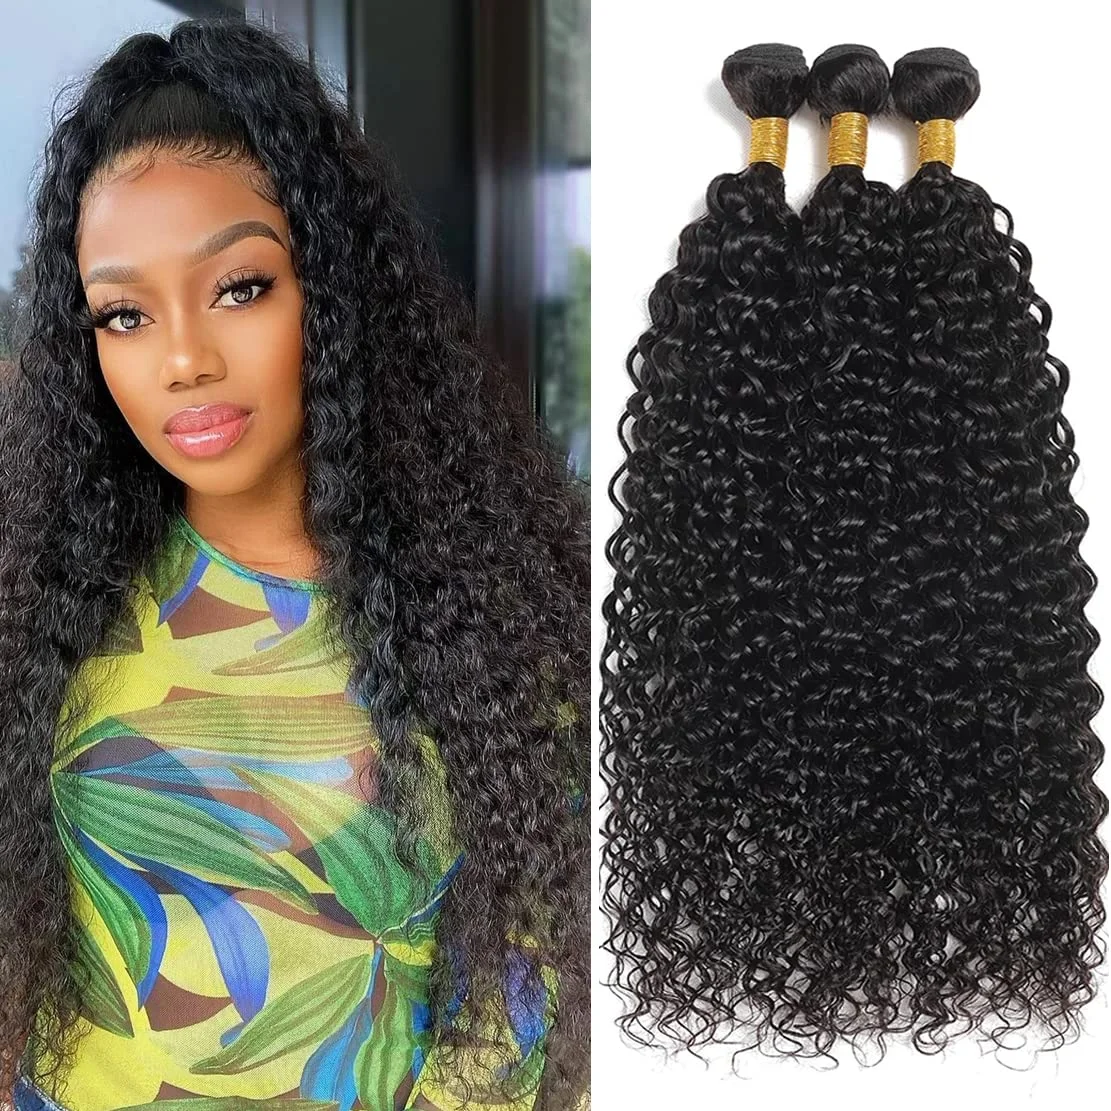 

Water Wave Bundles 100% Unprocessed Brazilian Virgin Human Hair Weave 1/3/4 Bundles Deal Loose Deep Wave Curly Hair 100g/pc